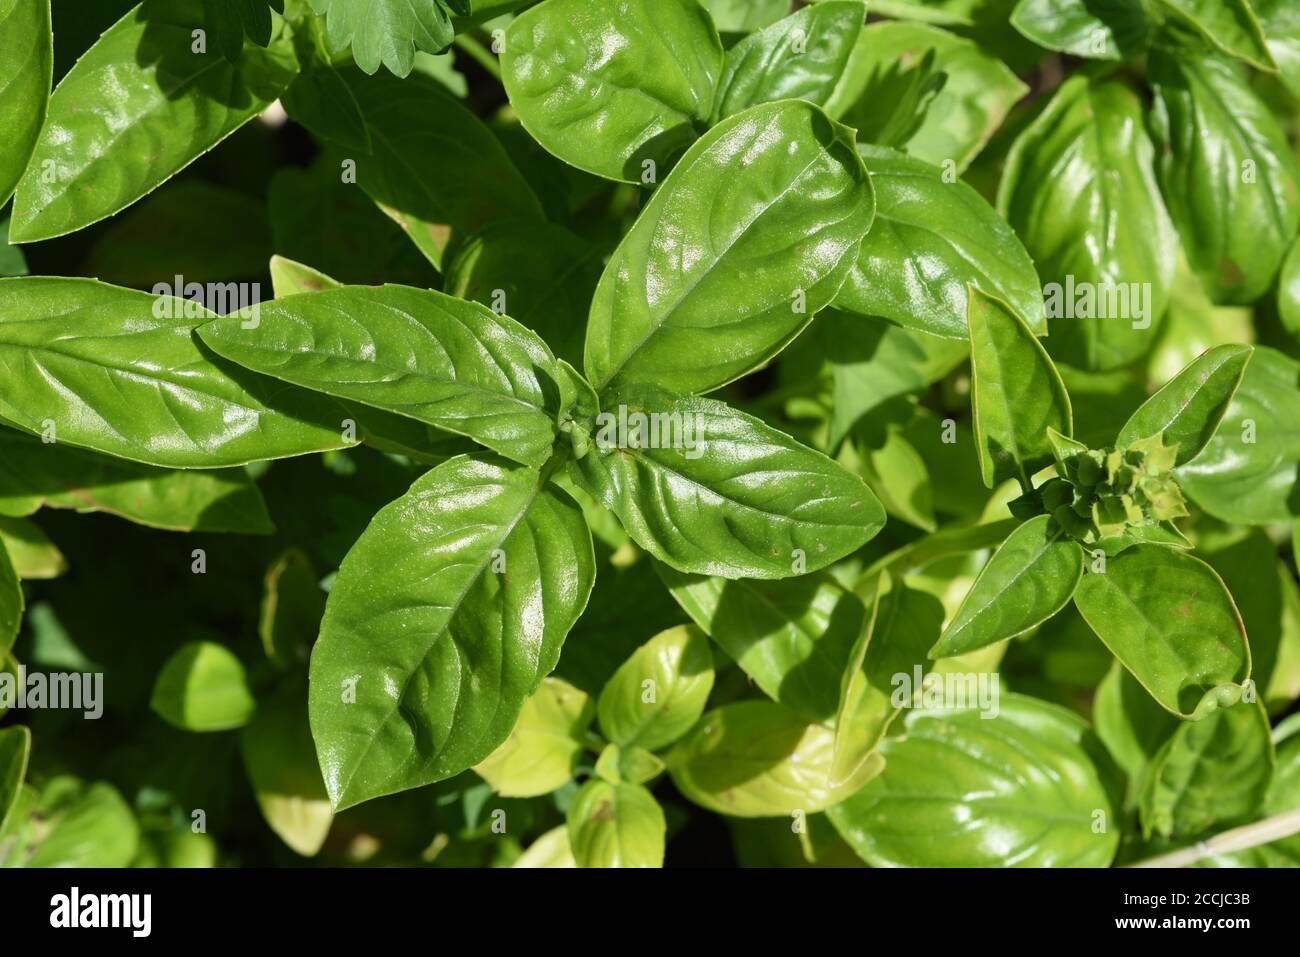 Basilikum, Ocimum basilicum, ist eine Heilpflanze und mit Kuechengewuerz gruenen Blaettern. Albahaca Ocimum basilicum, es una planta medicinal y cocina Foto de stock